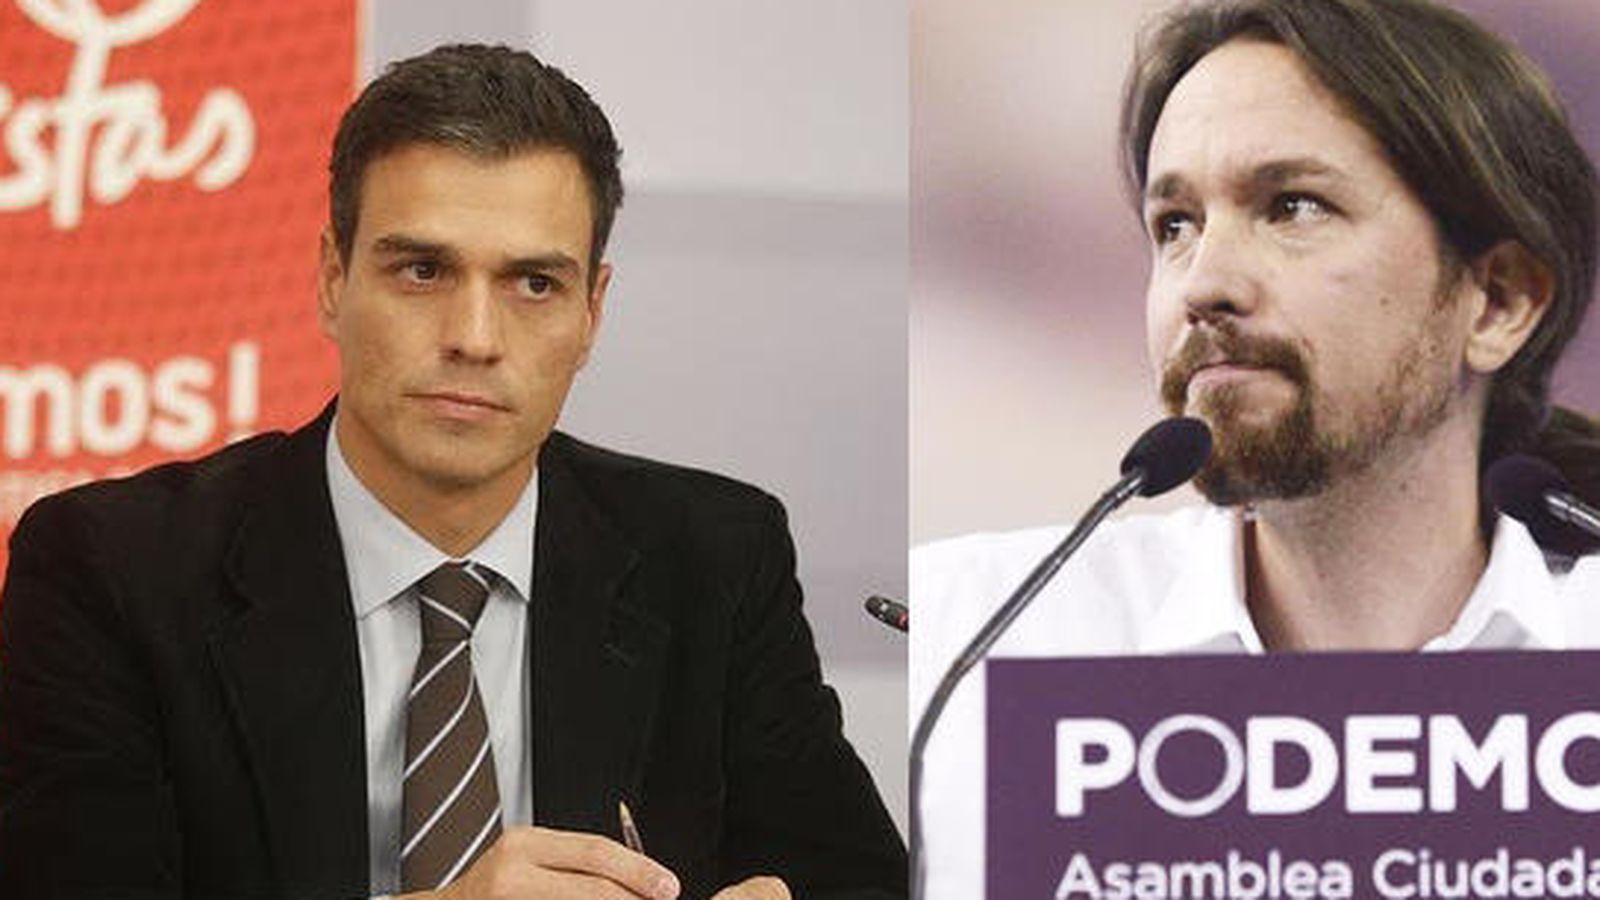 Foto: Pedro Sánchez (PSOE) y Pablo Iglesias (Podemos). EFE